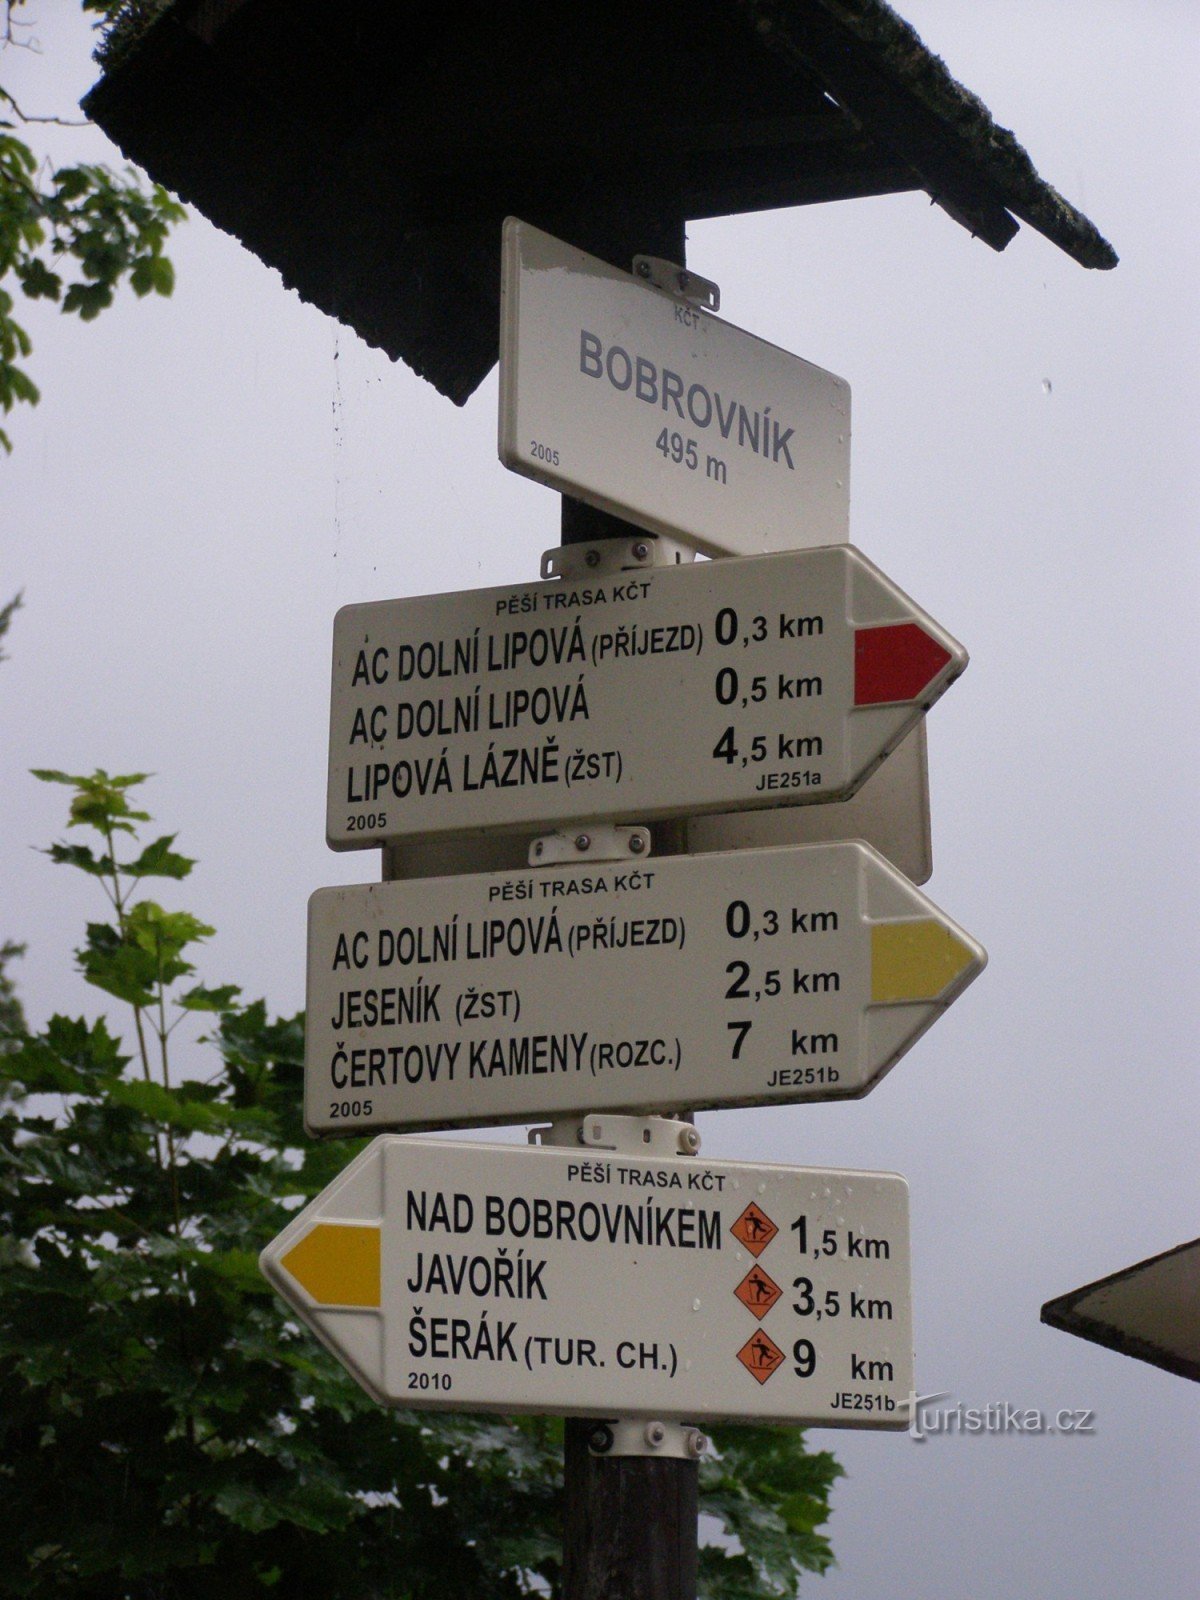 răscruce turistică - Bobrovník